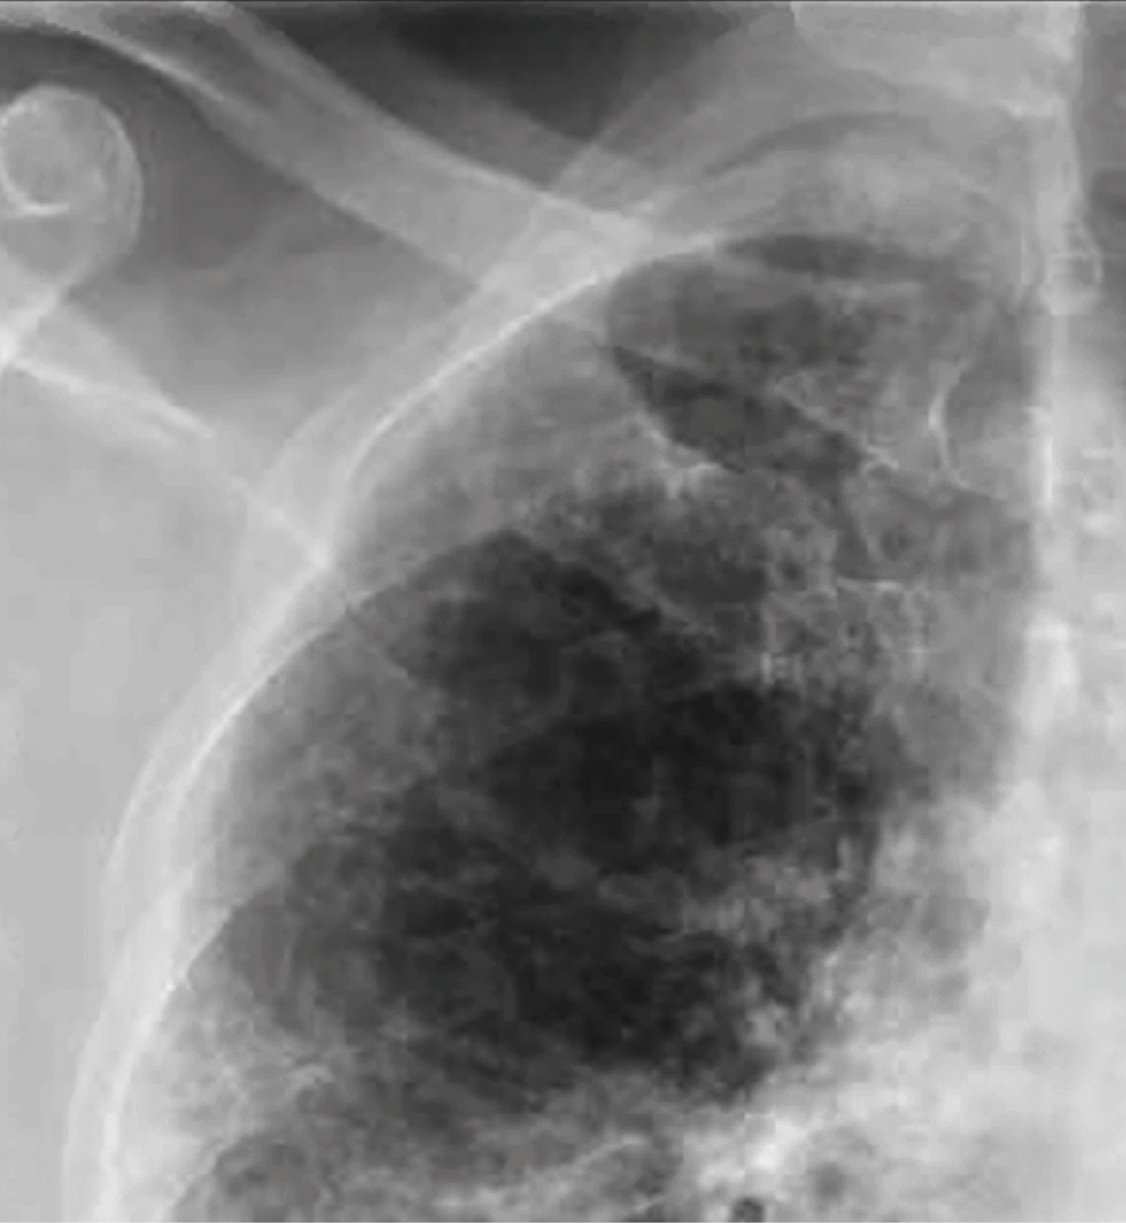  РГ грудної клітки обрізана для кращої візуалізації уражень: численні чіткі ретикулярні затемнення в периферичній частині легені з відносним збереженням центральної частини легені вільною від уражень 